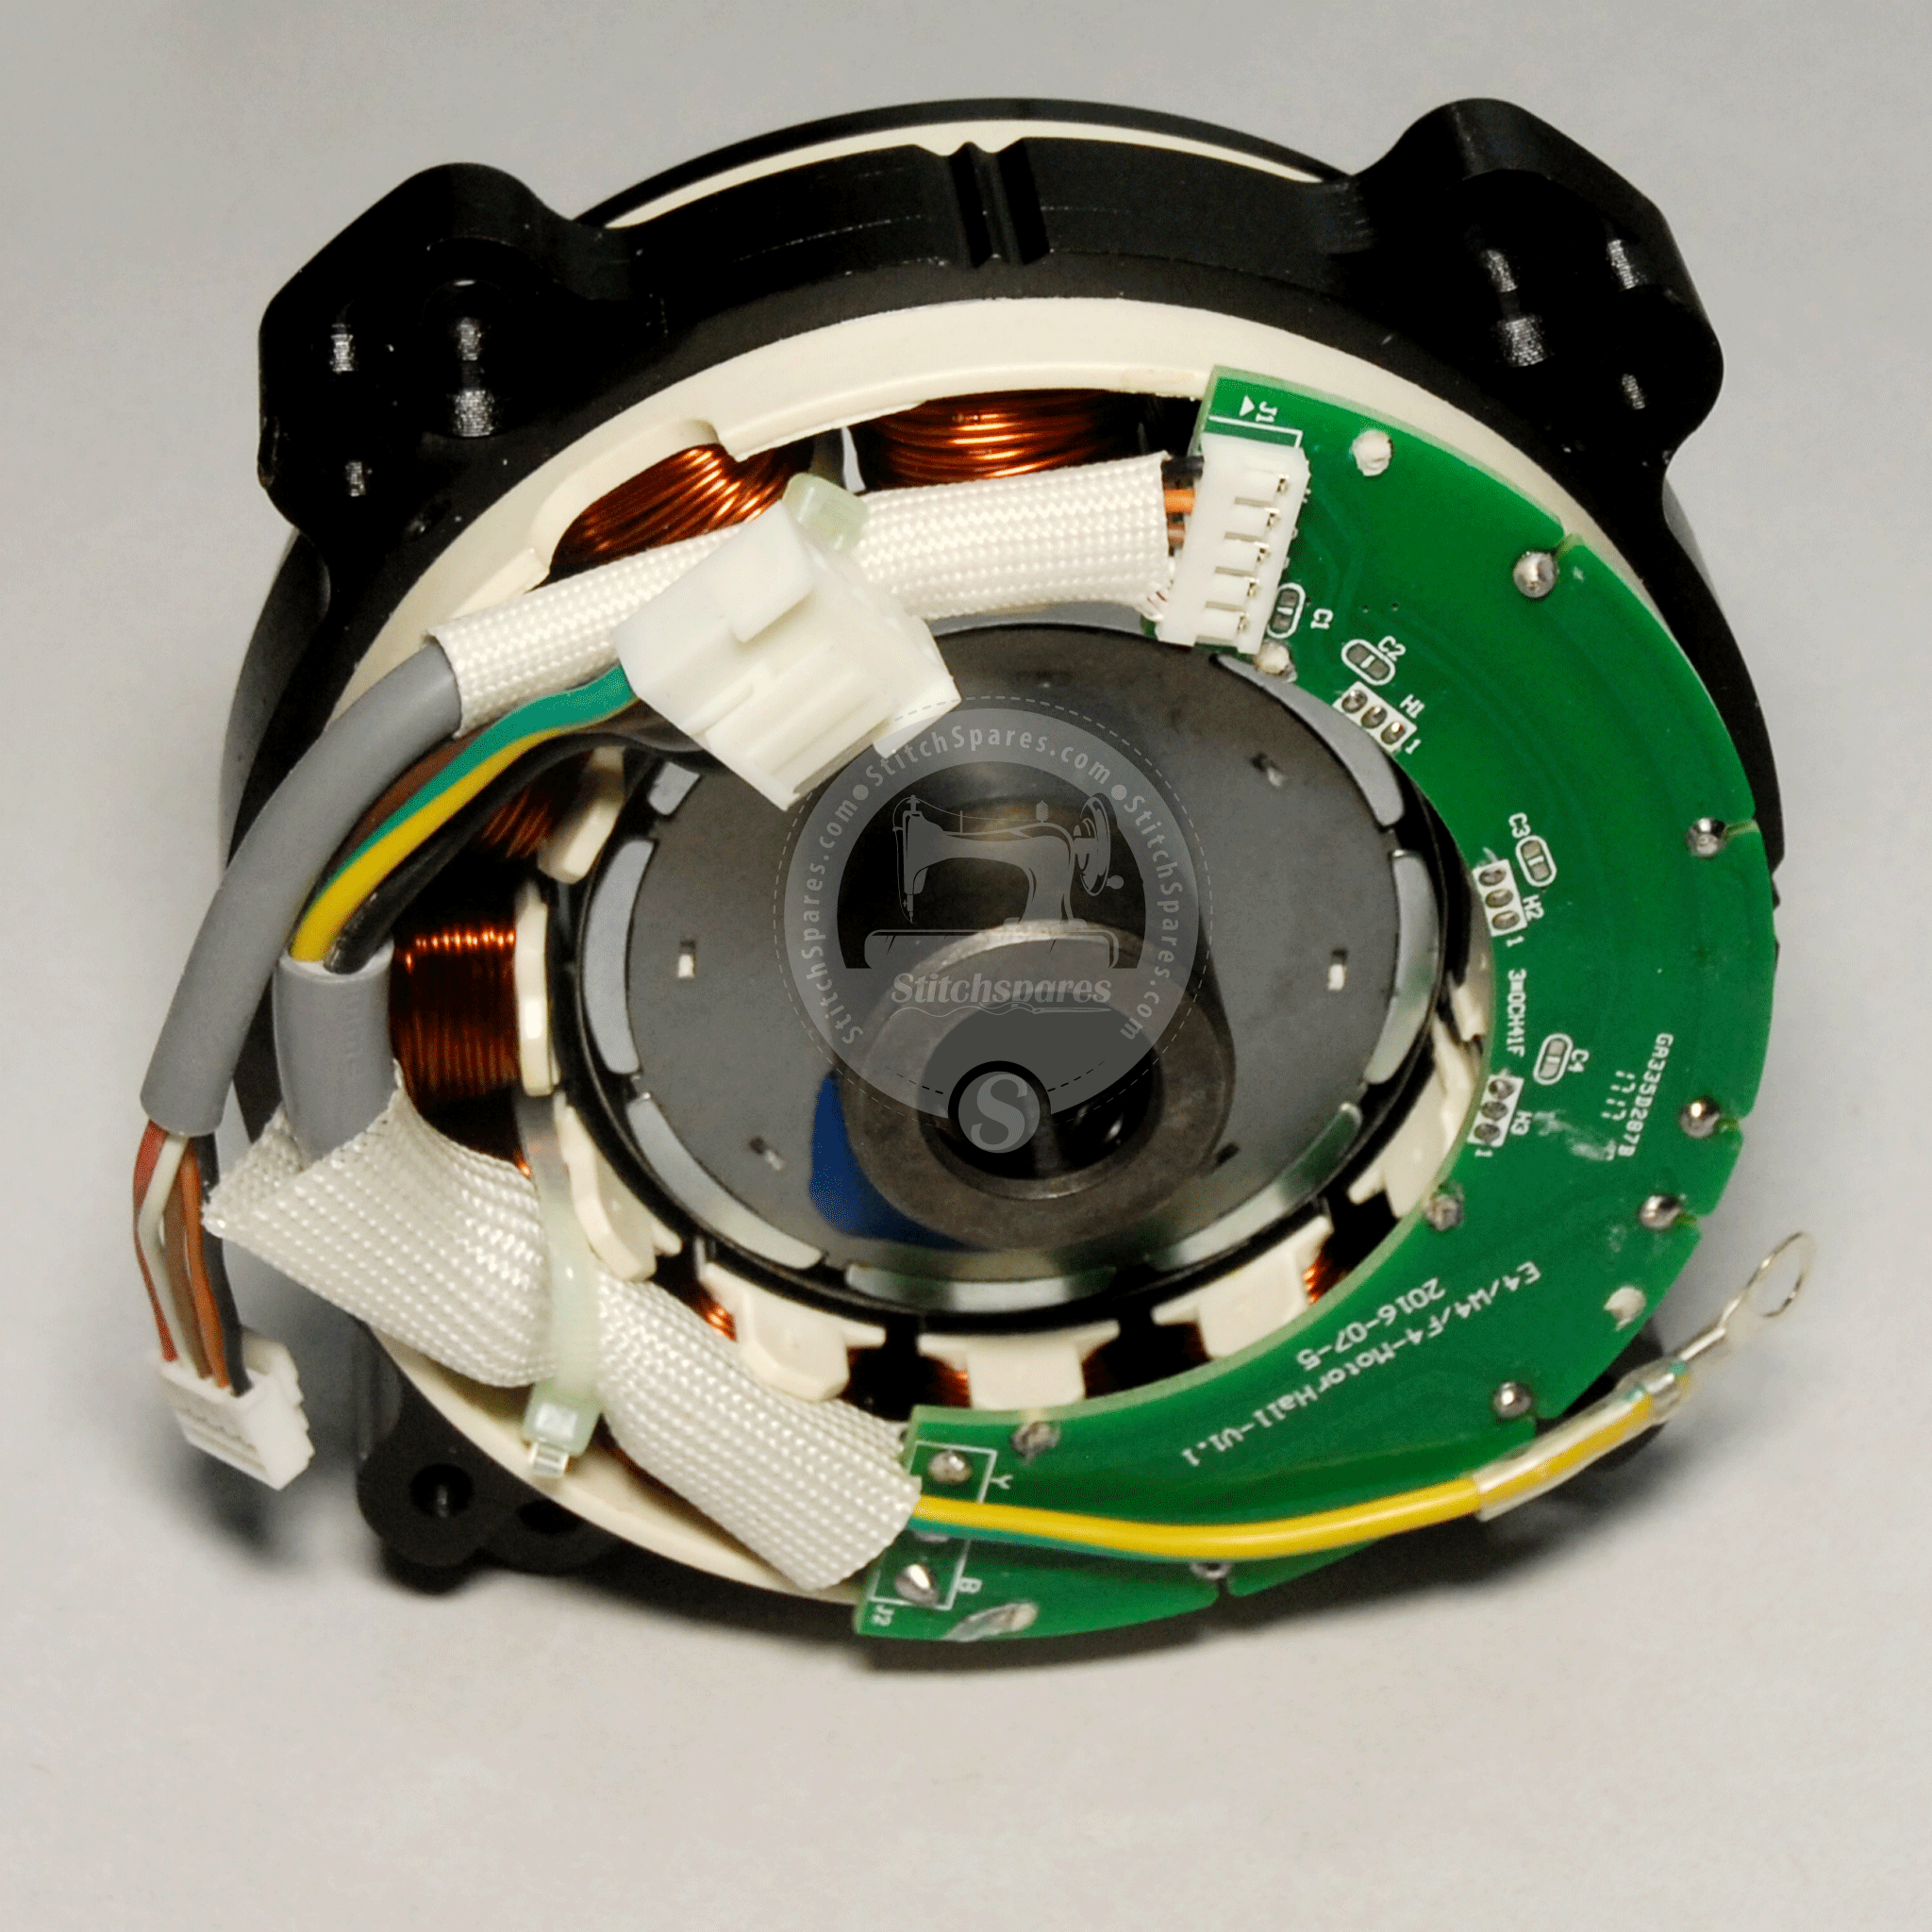 10133045 Motor F4, E4, W4, Jack Pieza de repuesto de máquina de coser de puntada simple con aguja única